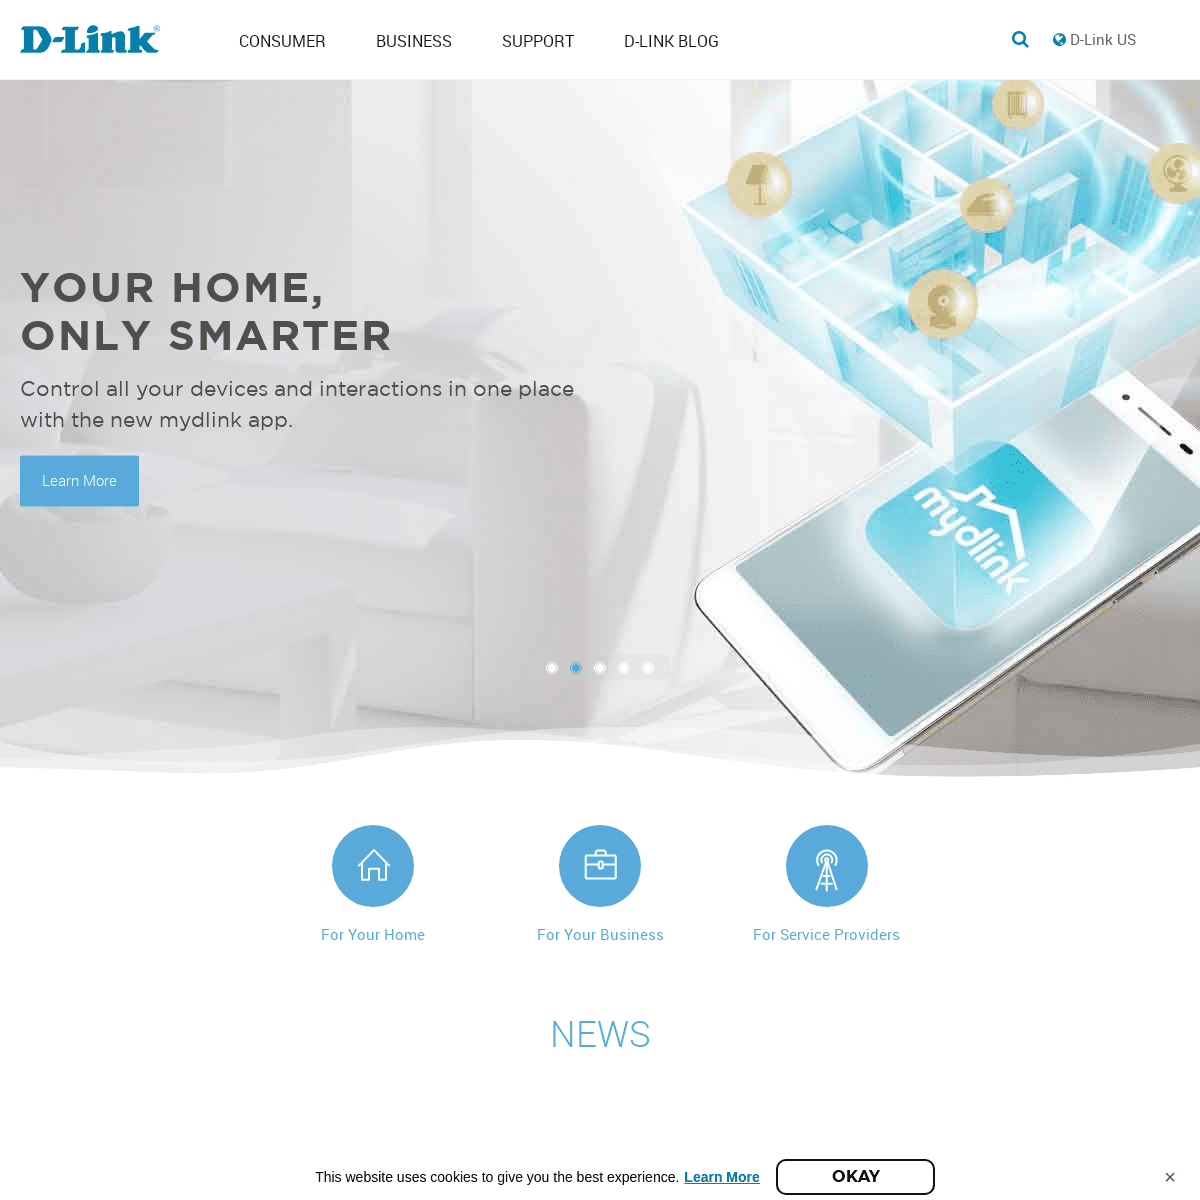 A complete backup of dlink.com